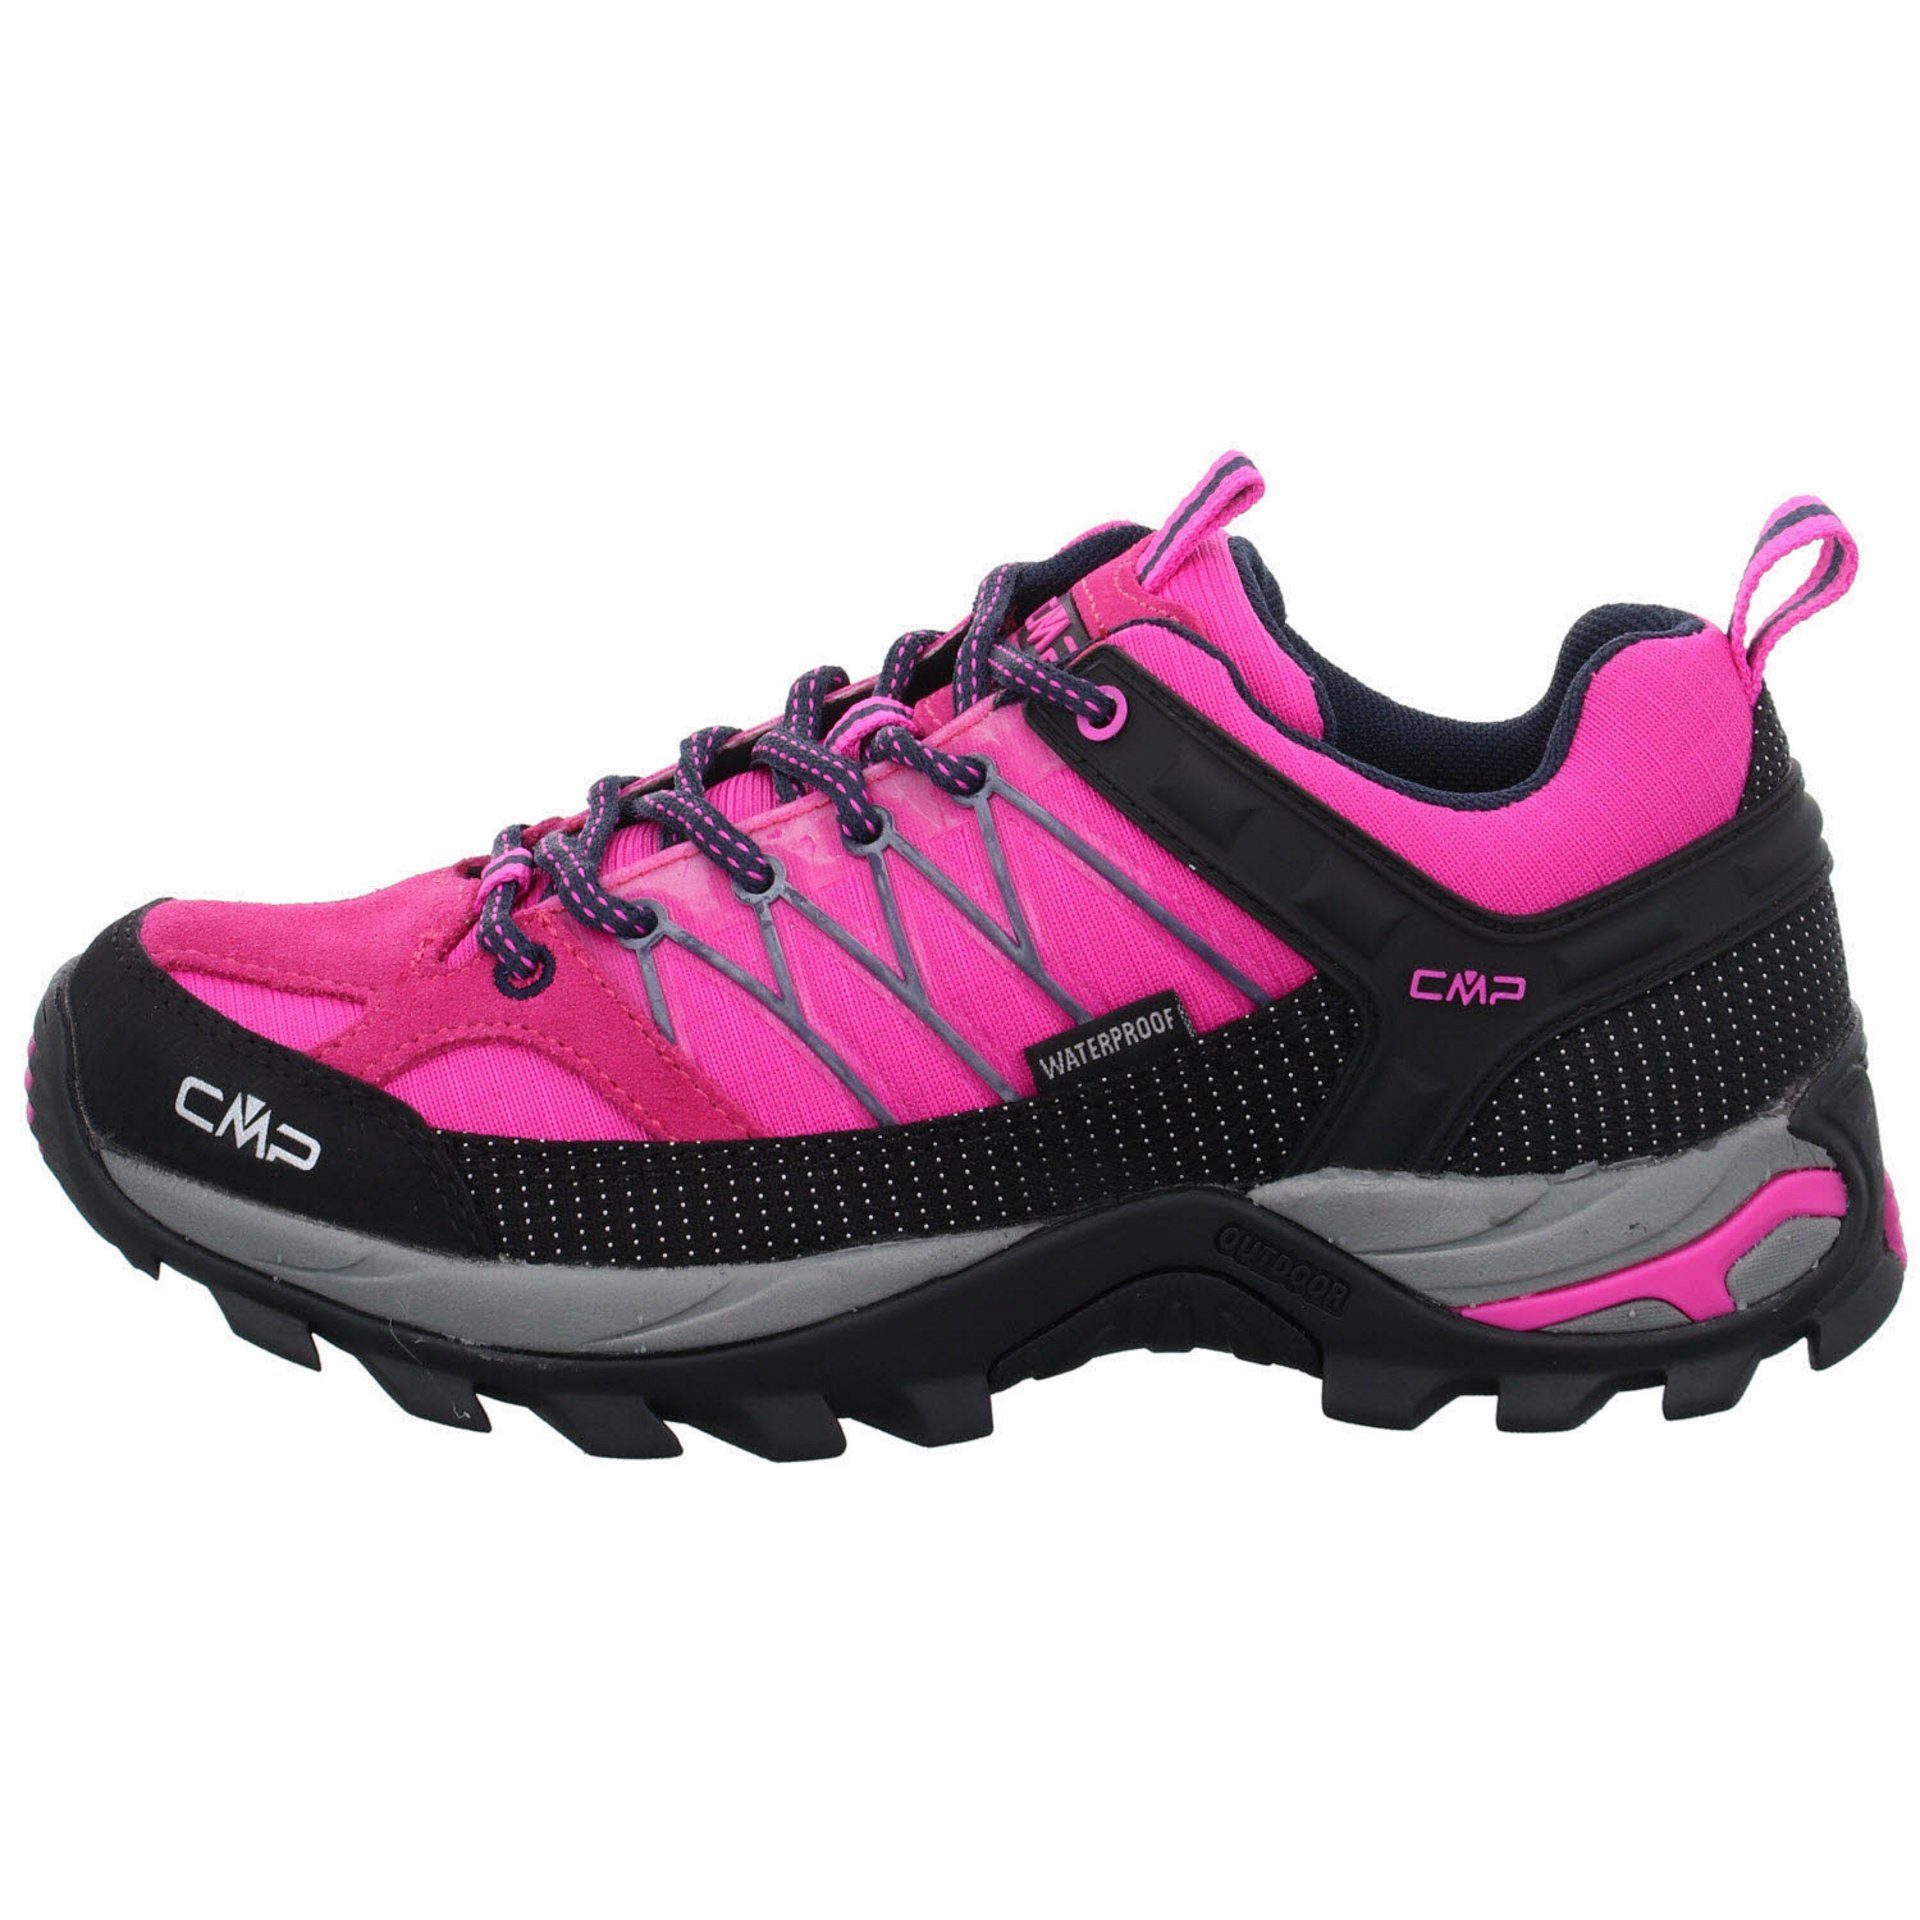 (03201886) Outdoorschuh Outdoor Rigel pink Outdoorschuh Low fluo-b.blue CMP Damen Leder-/Textilkombination Schuhe